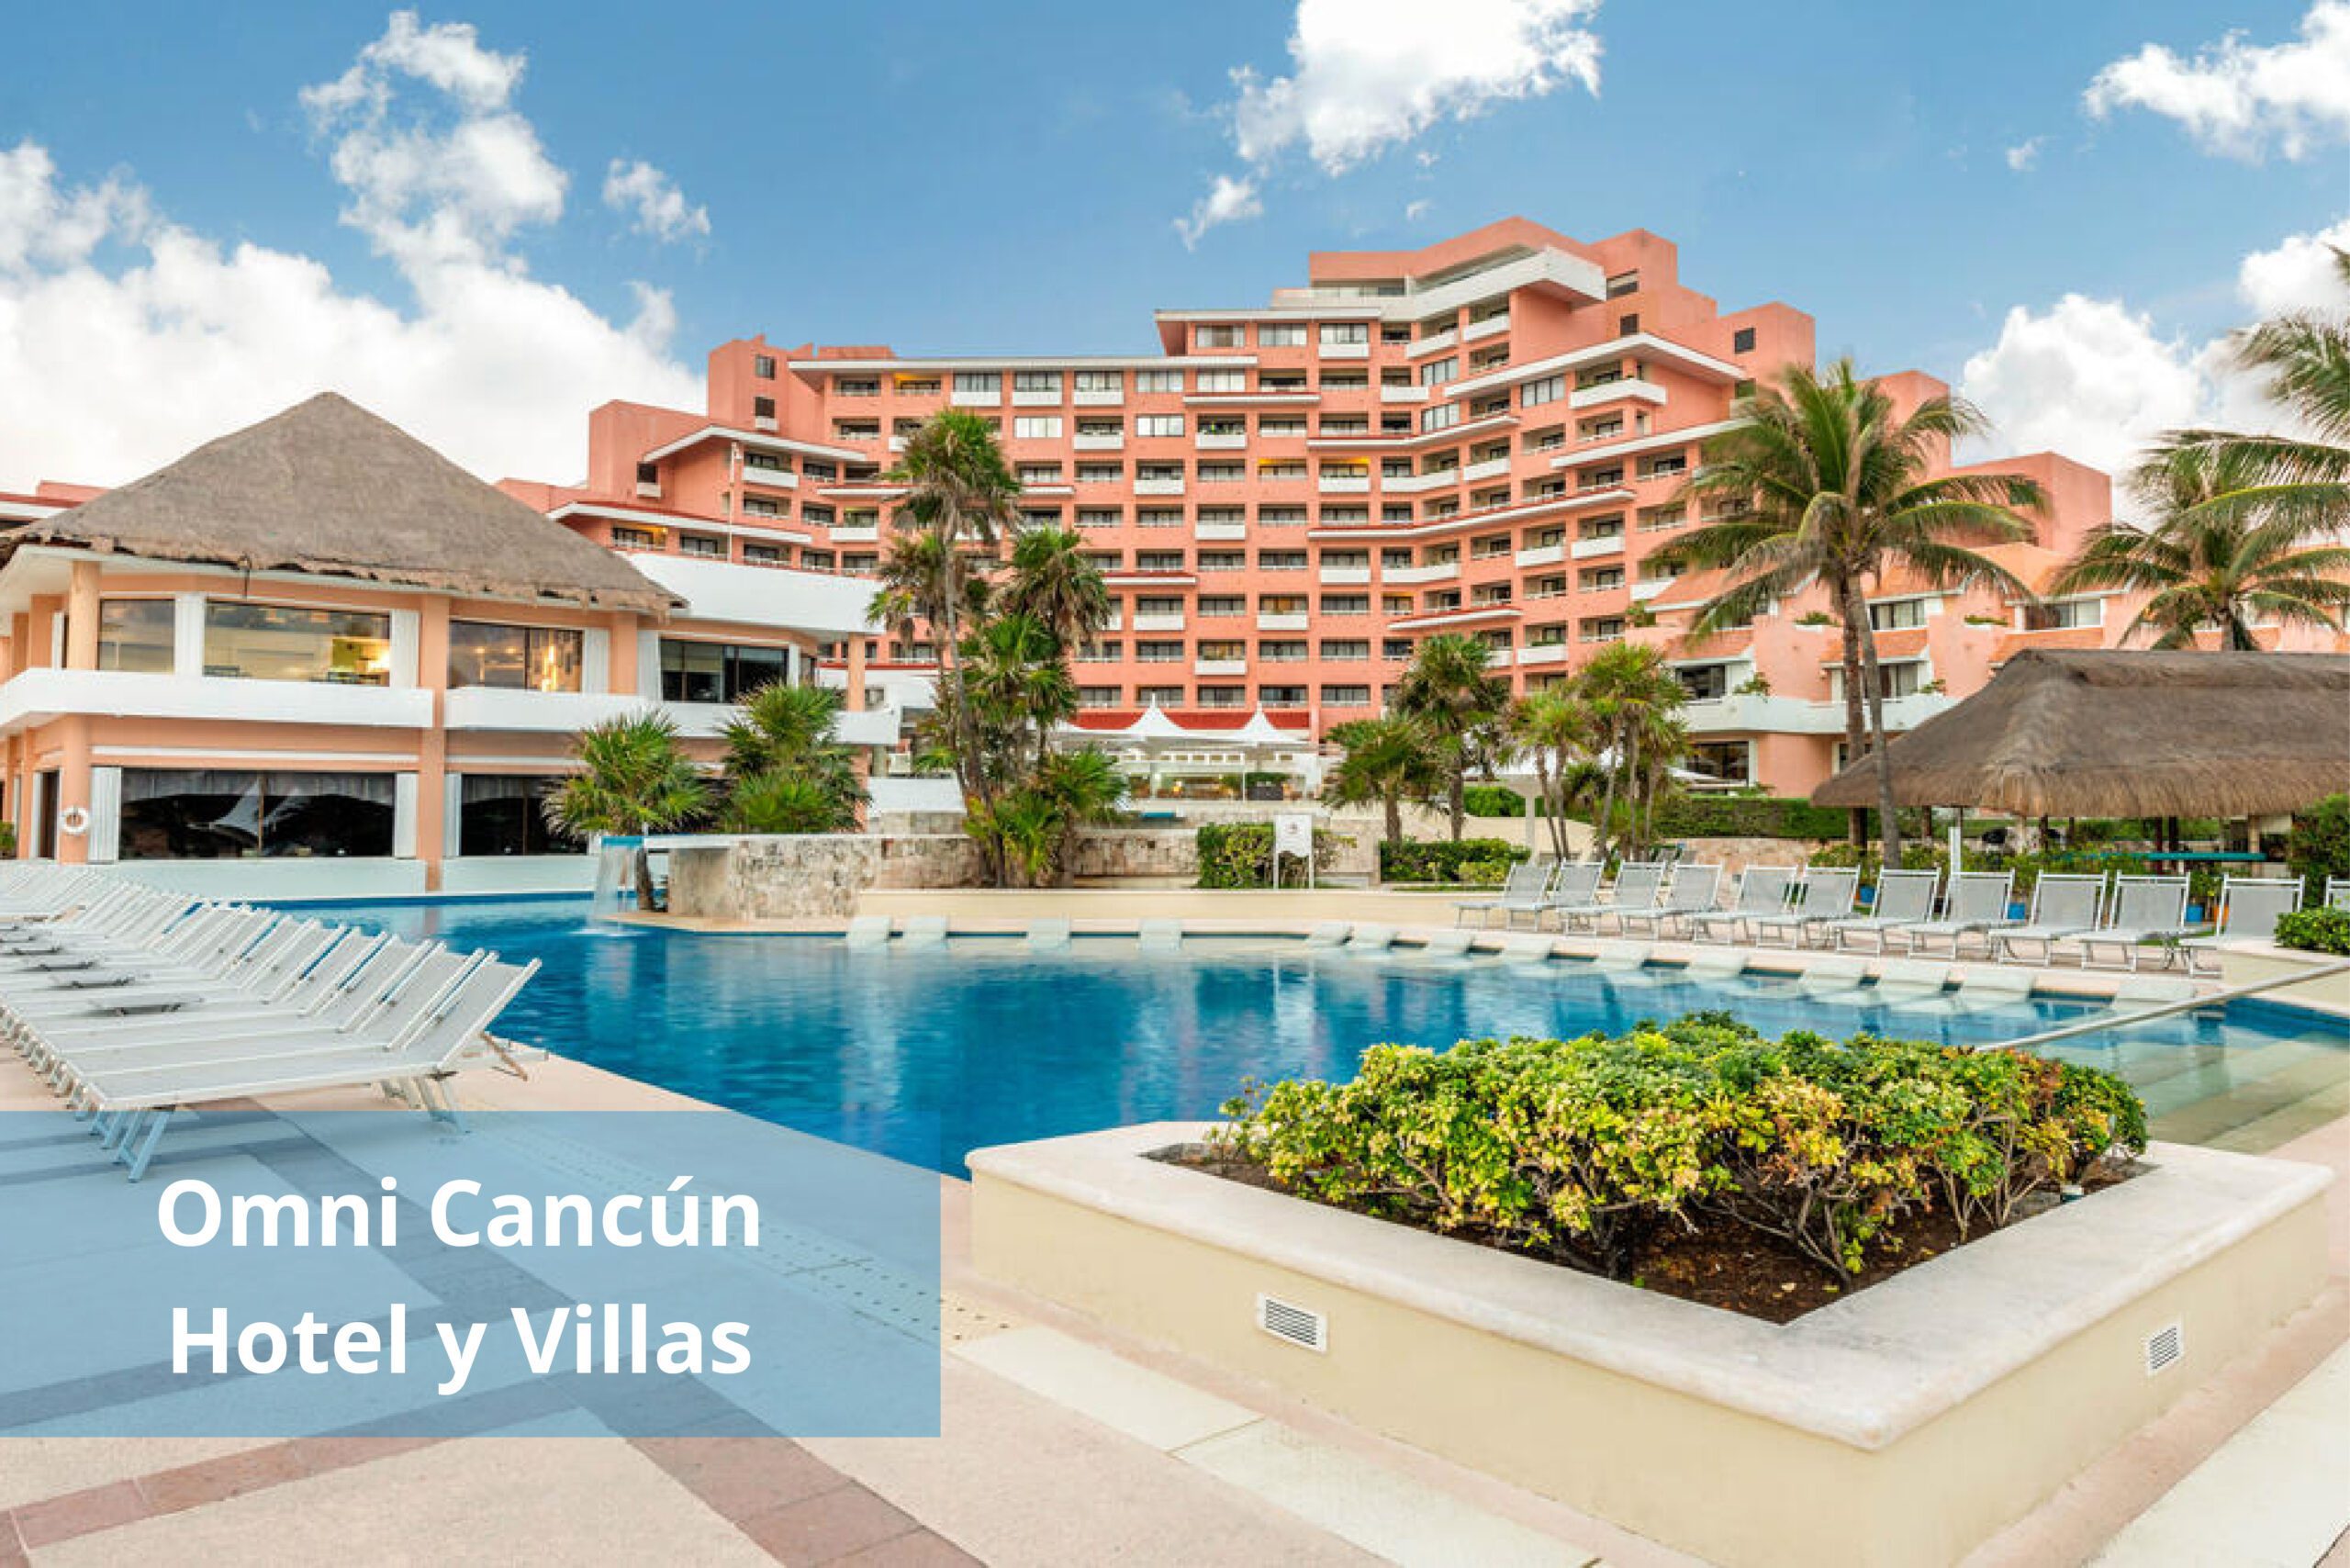 Omni Cancún Hotel y Villas